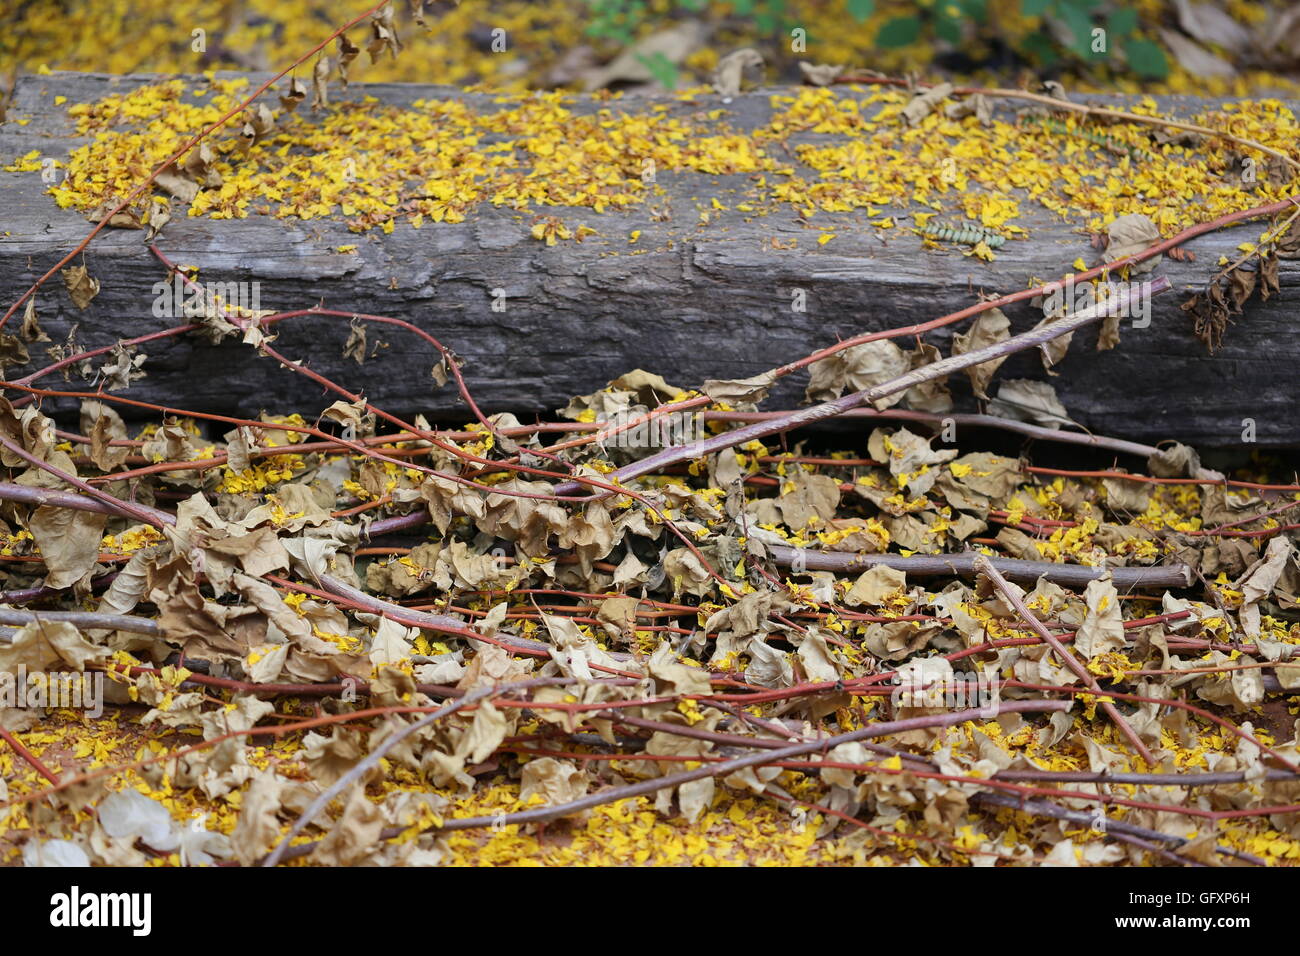 Getrimmt und getrockneten Blätter und Blüten. Trockene Stiele von Bogonbilih mit gelben Blüten von Poinciana Baum in einem Haufen in der Nähe von der hölzernen Bahnschwellen. Stockfoto